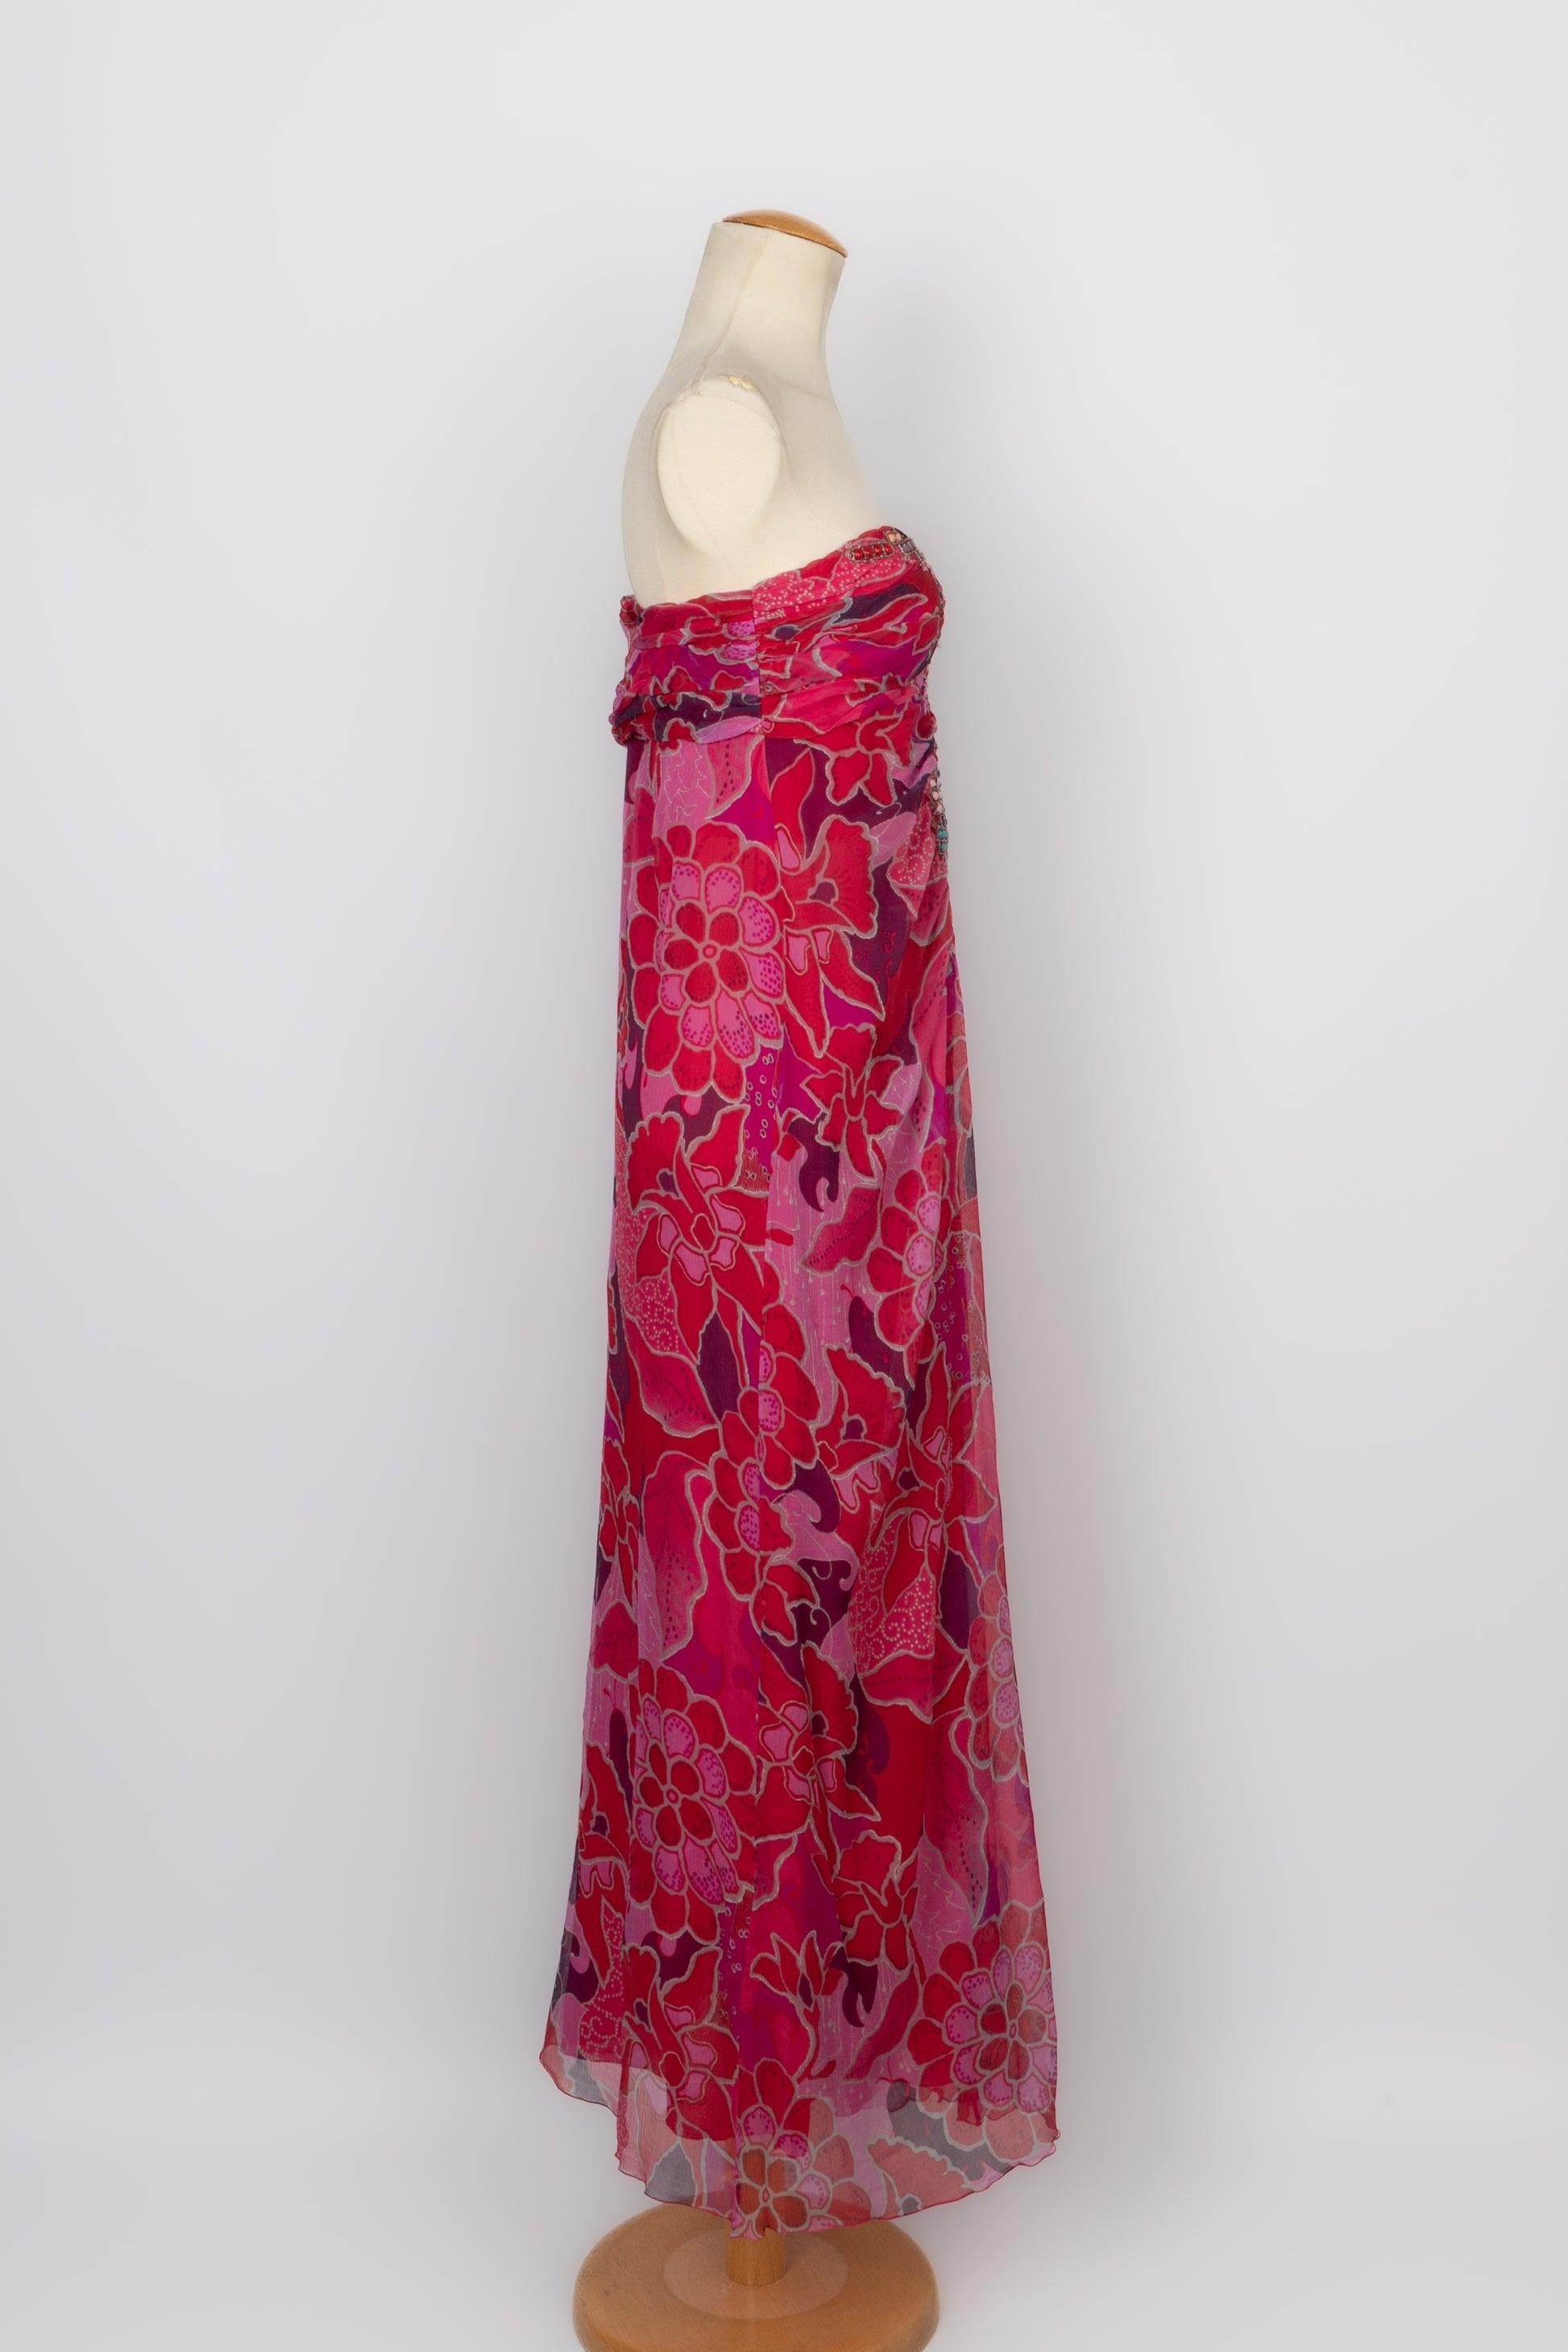 Ungaro Bustier Dress in Pink Tones For Sale 2